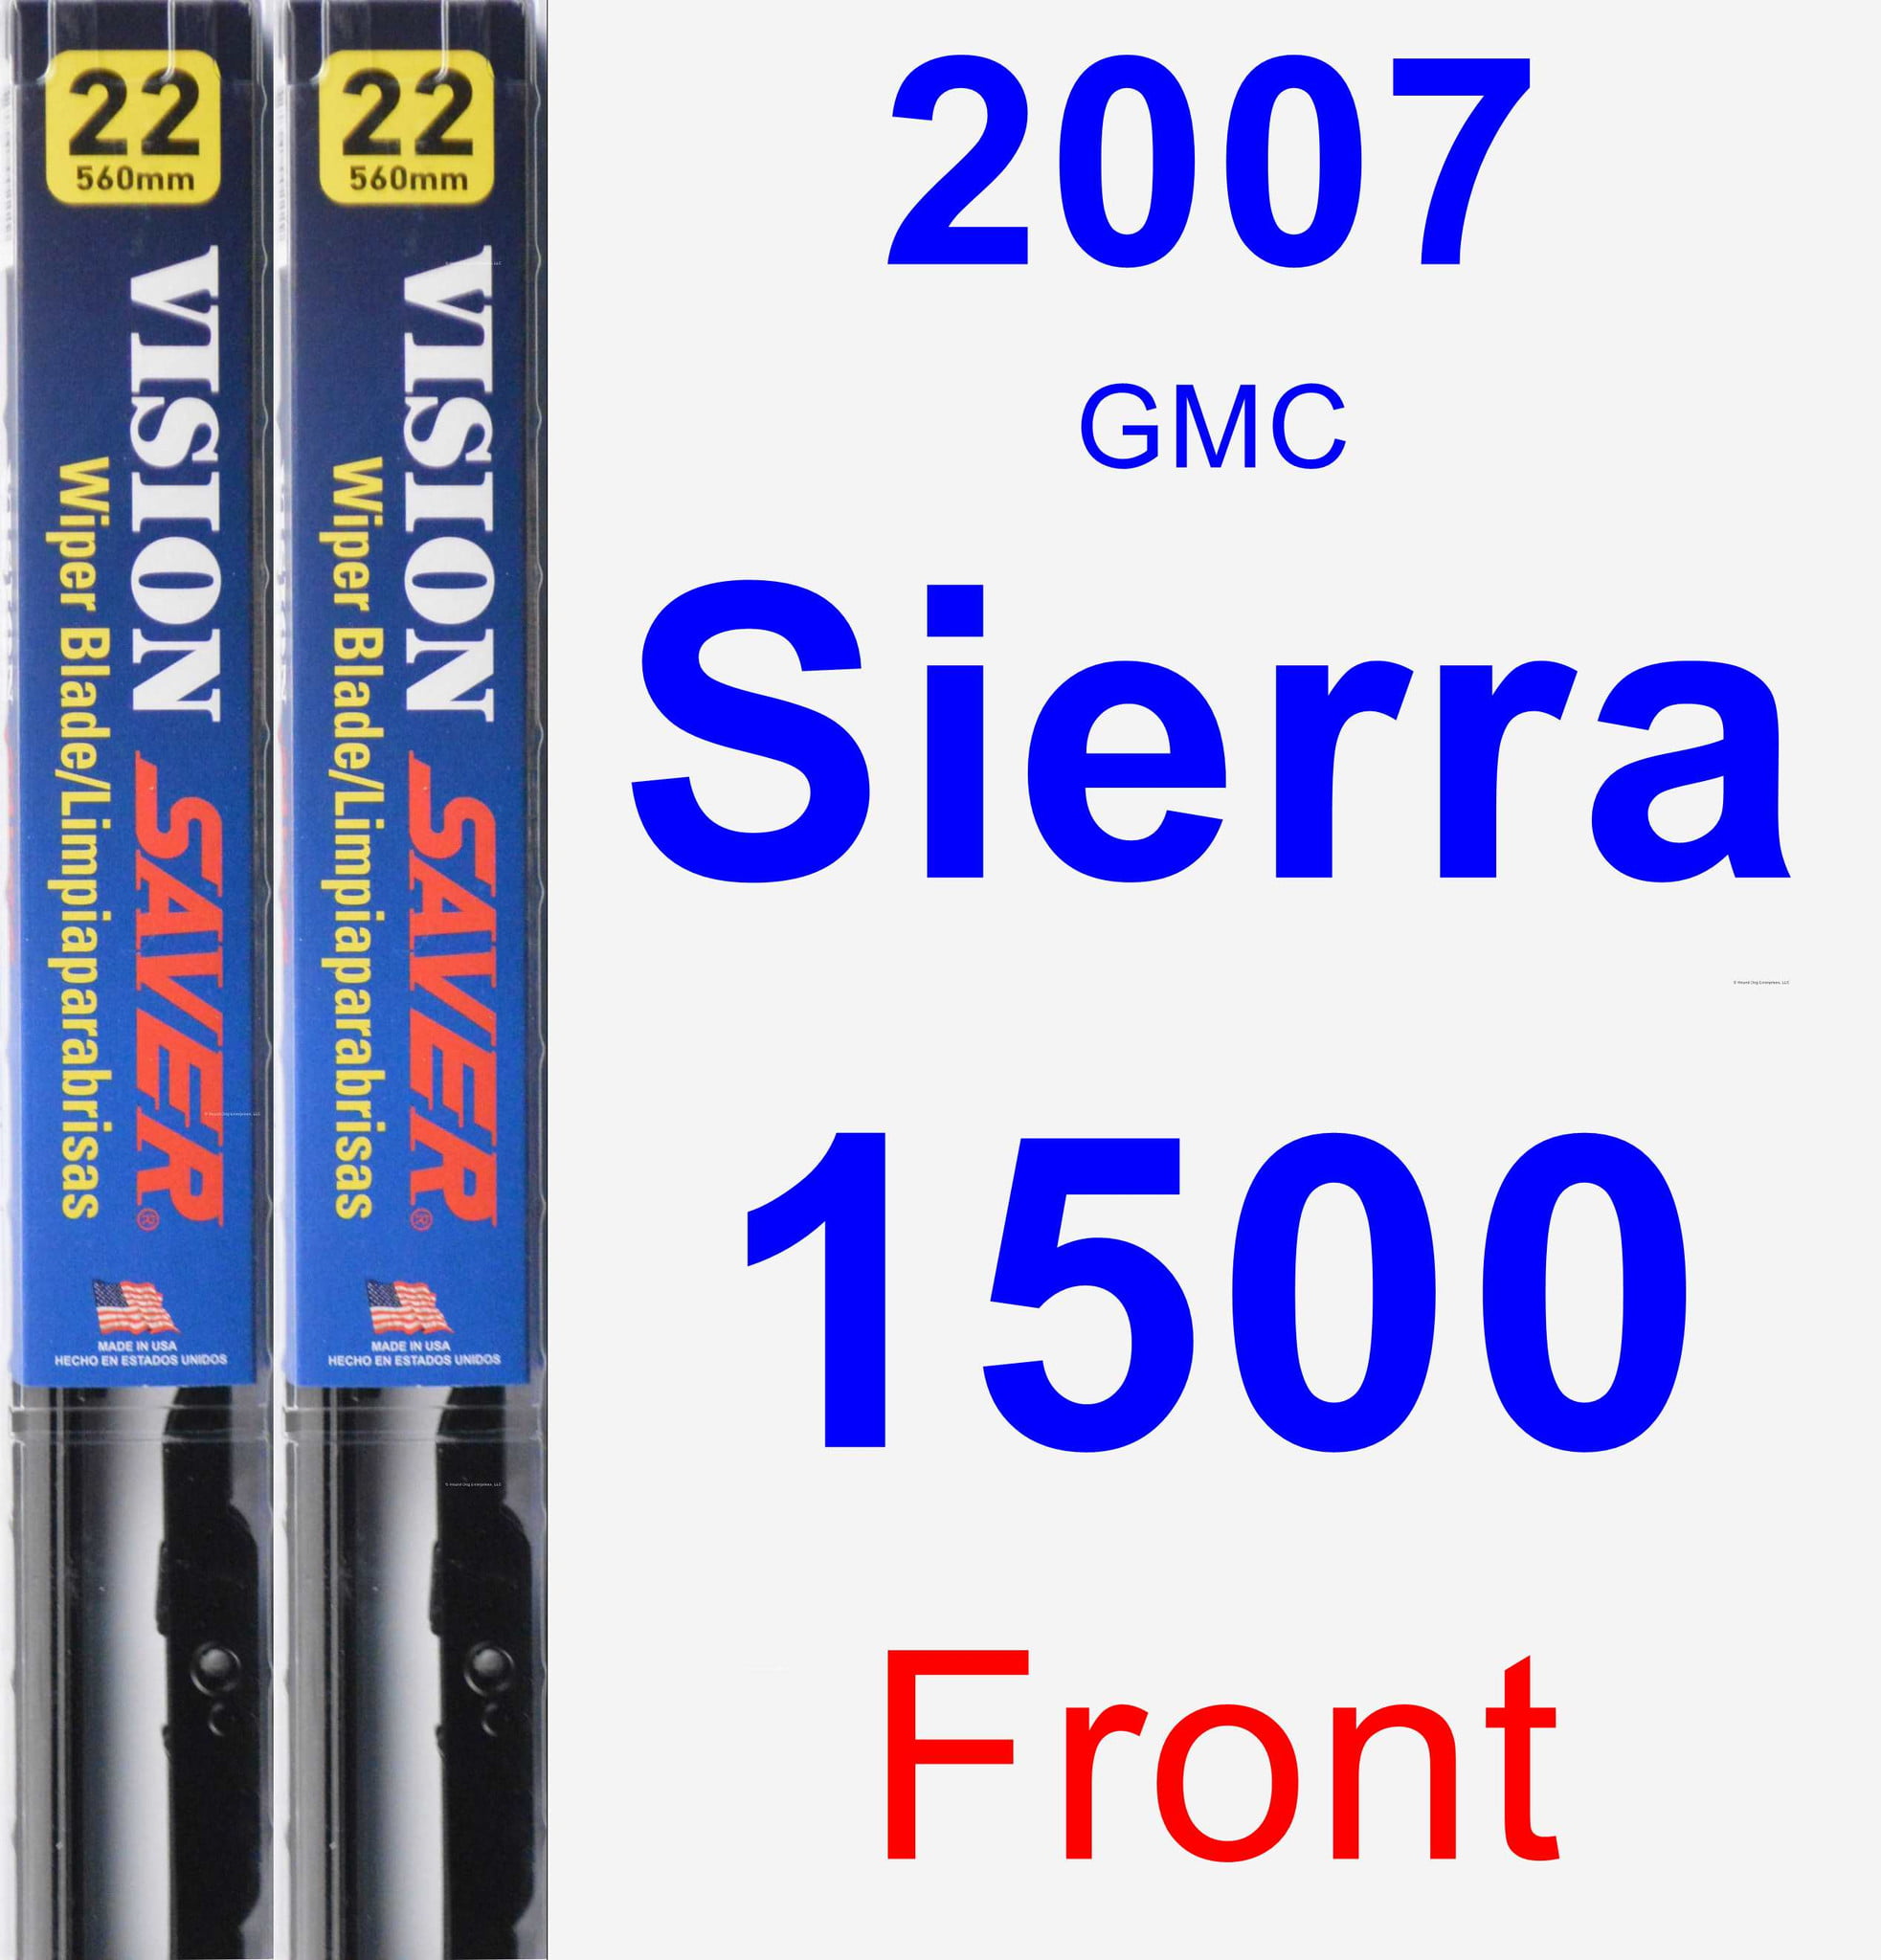 2007 GMC Sierra 1500 Wiper Blade Set/Kit (Front) (2 Blades) - Vision Saver - Walmart.com 2001 Gmc Sierra 1500 Wiper Blade Size